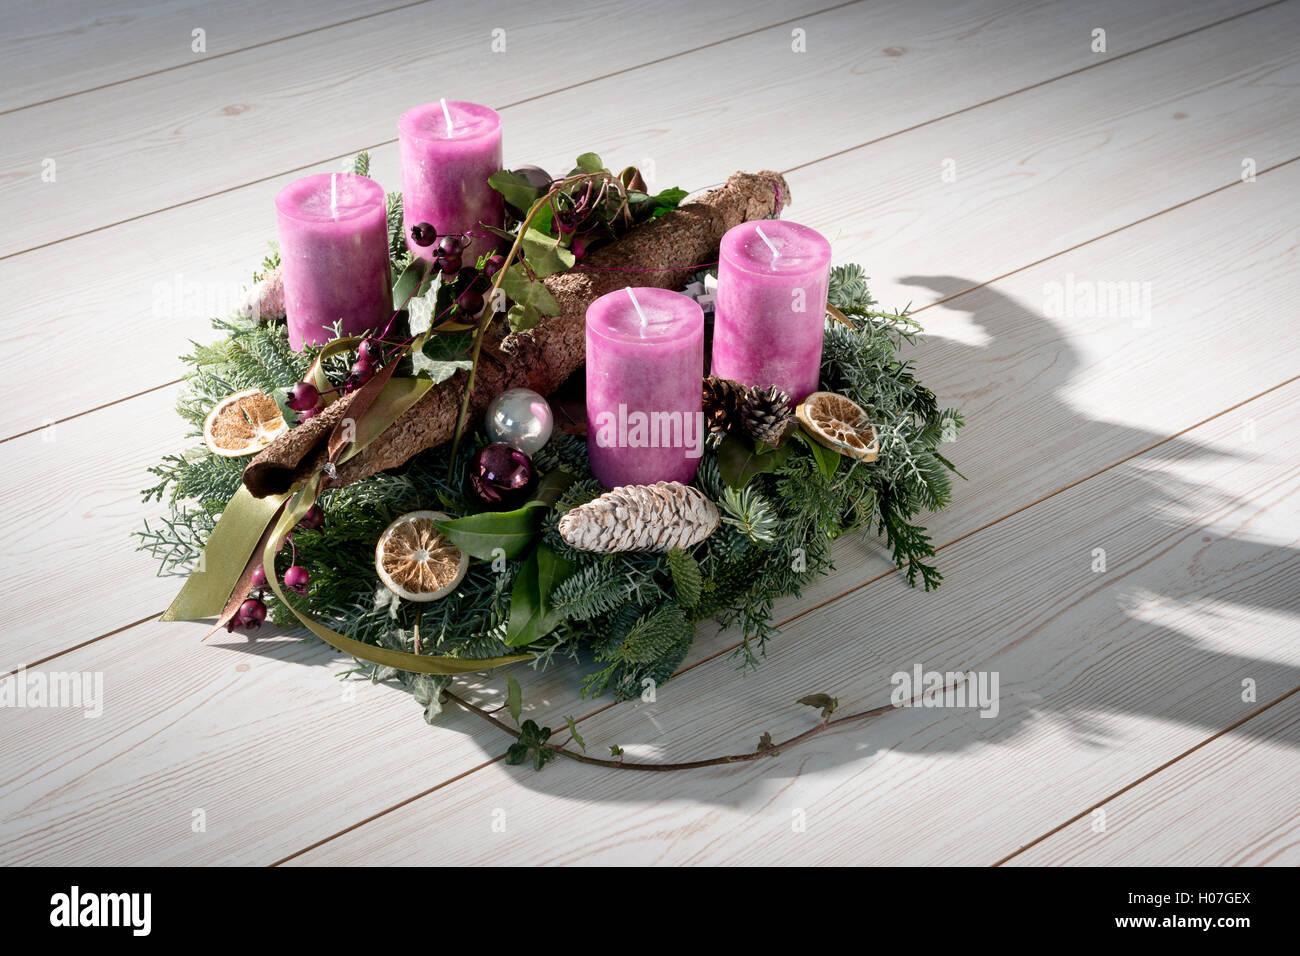 Adventskranz mit lila Kerzen Stockfotografie - Alamy